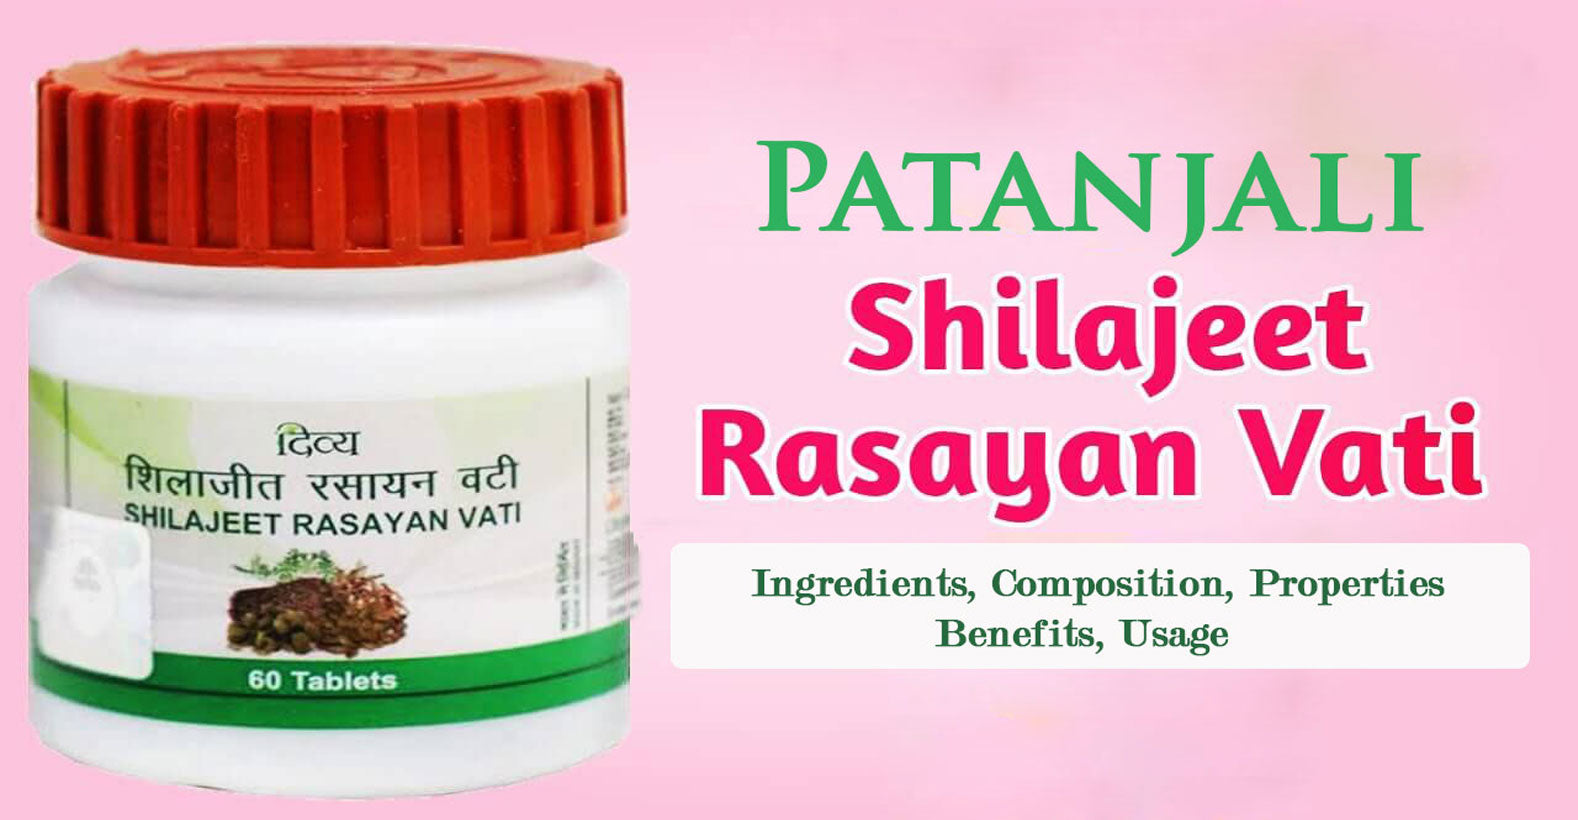 1578px x 820px - Patanjali Divya Shilajeet Rasayan Vati - Health Benefits, Ingredients,  Usage, Dosage